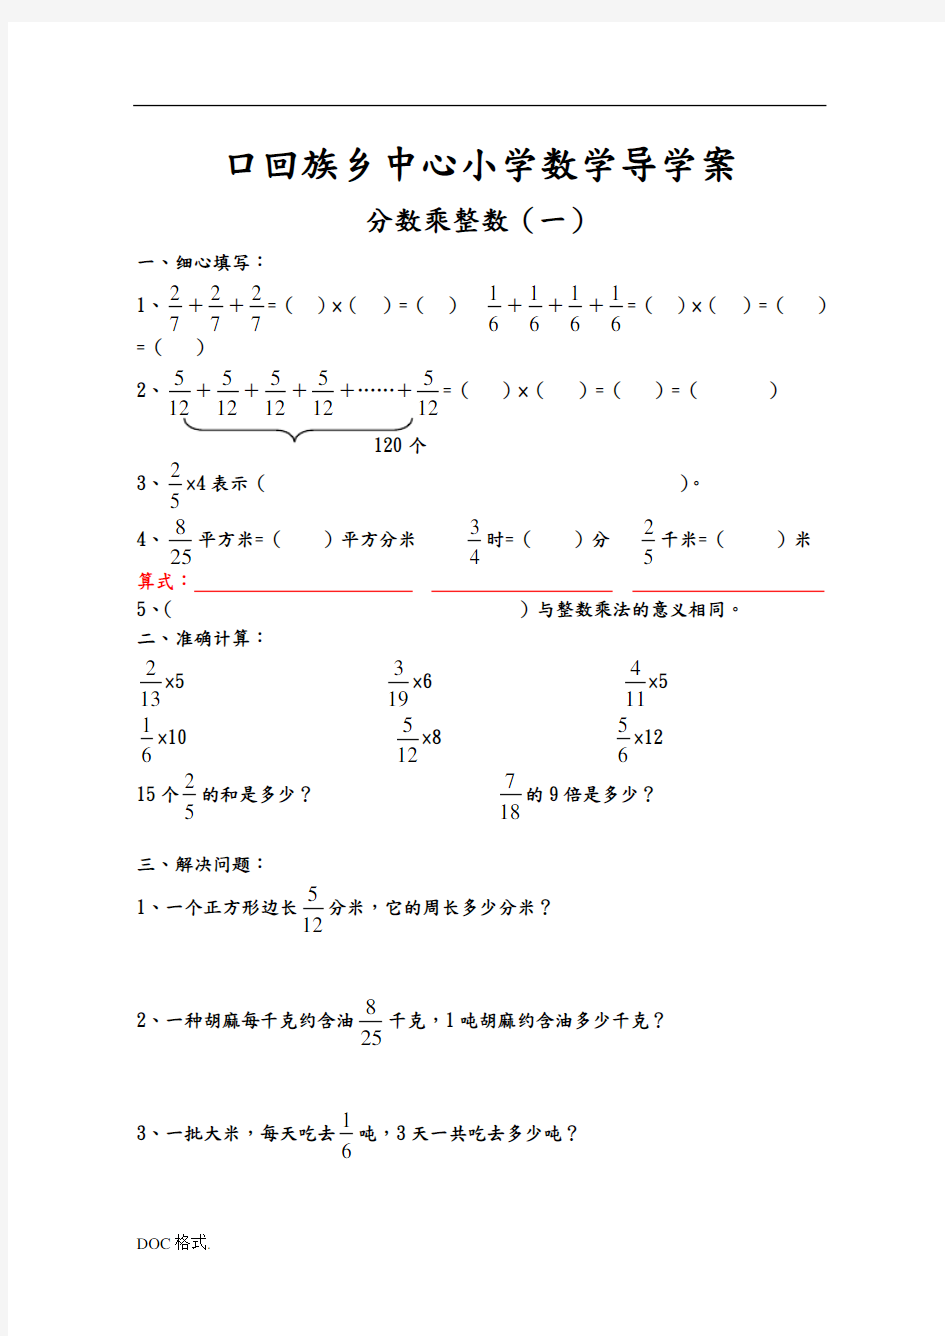 人教版六年级数学(上册)分数乘法练习题全套